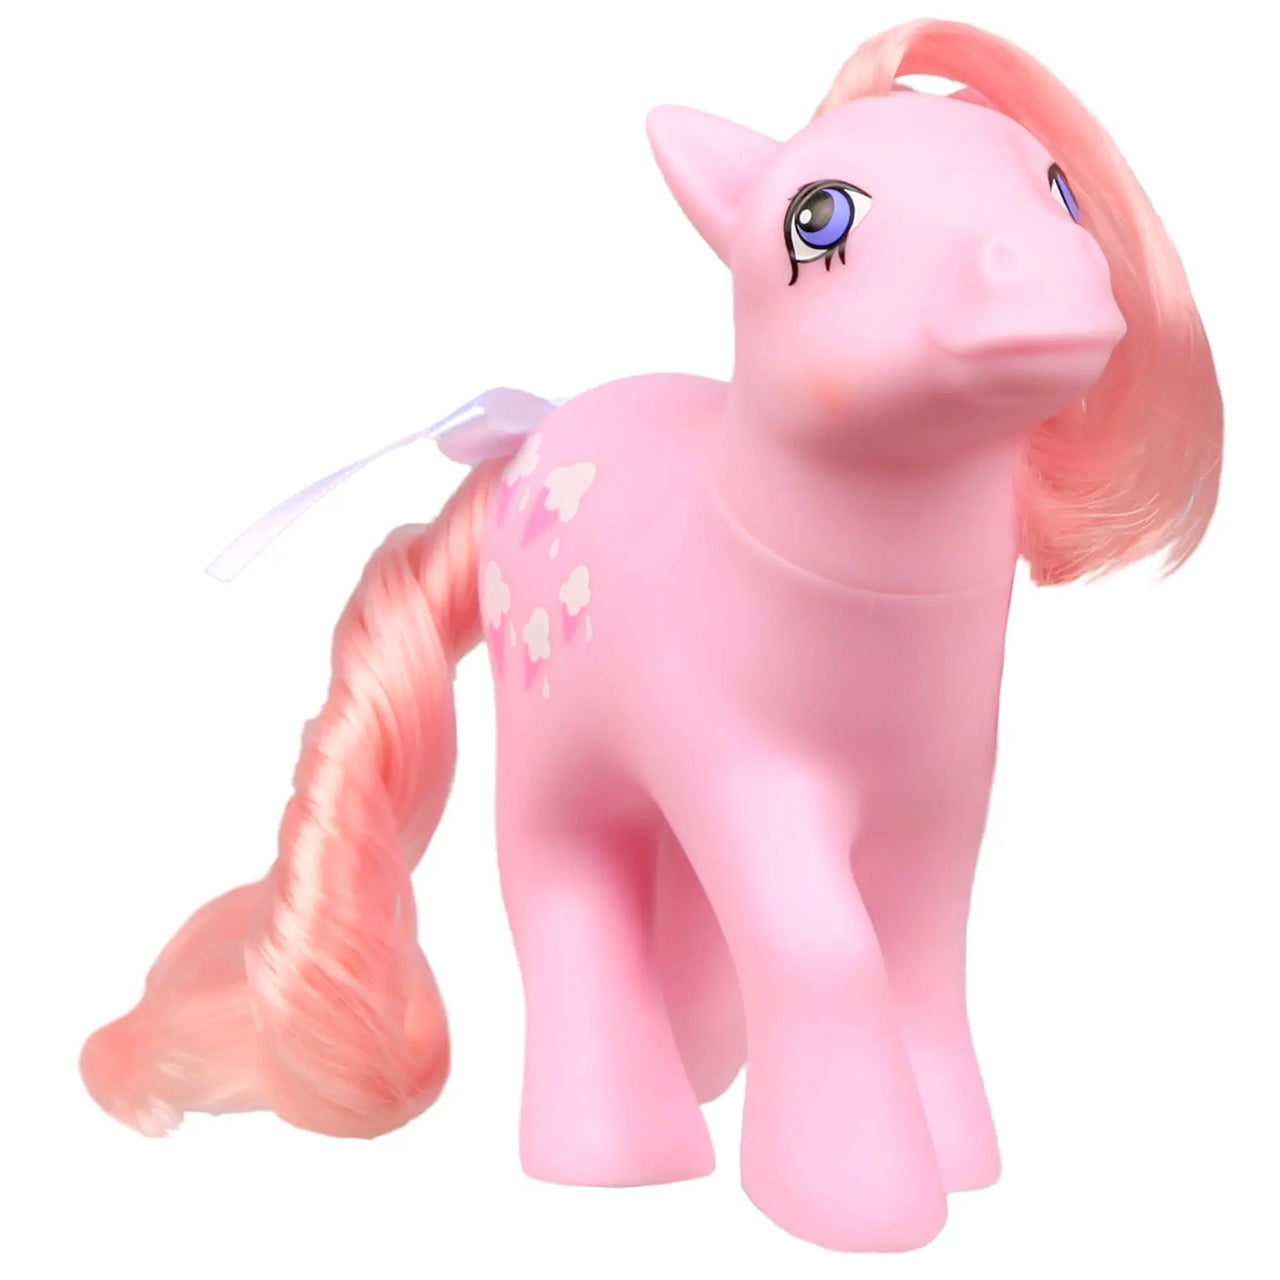 My Little Pony Classics Pony Wave 4 Lickety-Split My Little Pony